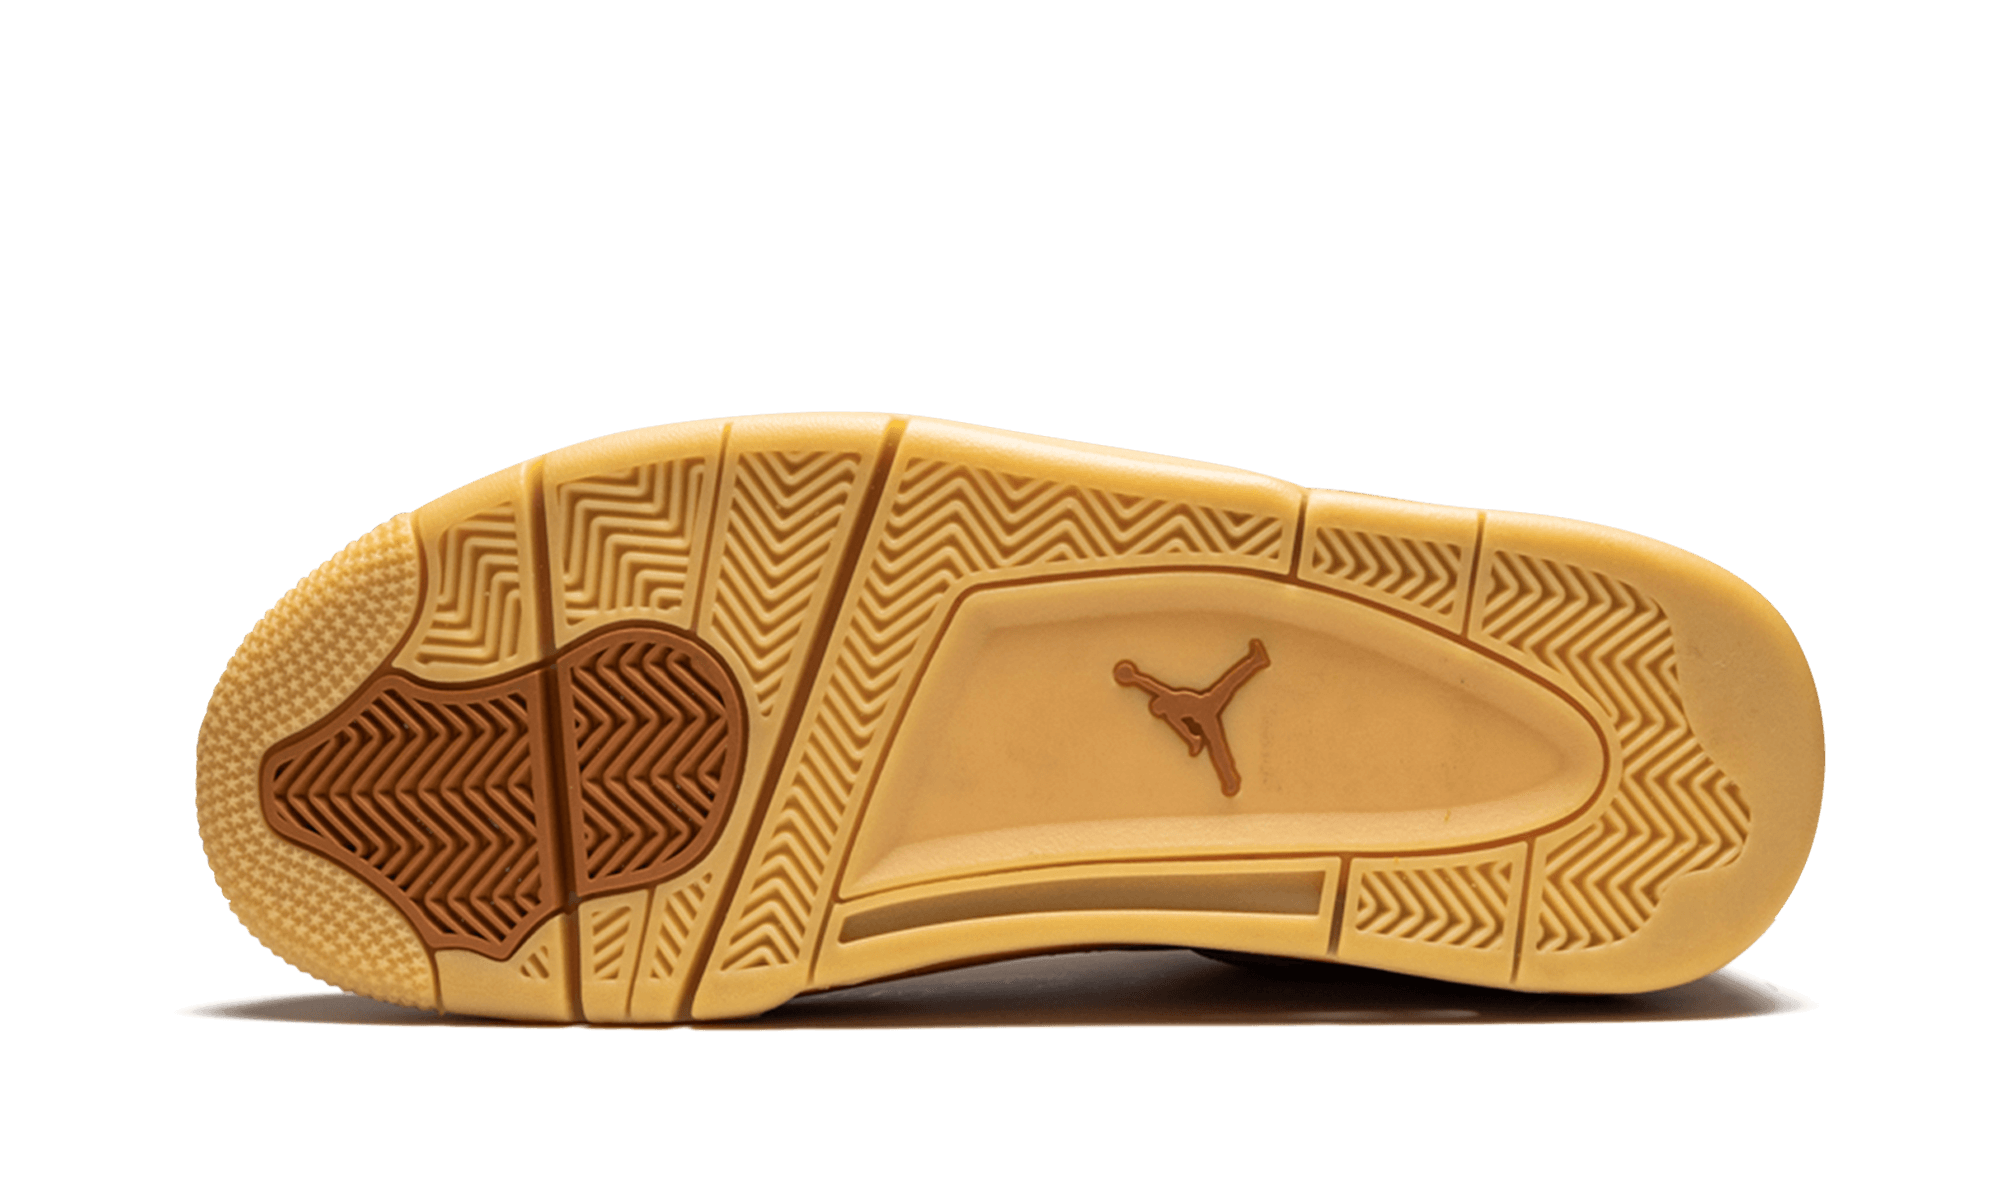 Air Jordan 4 Premium Ginger Wheat 2016 819139-205 Release Date